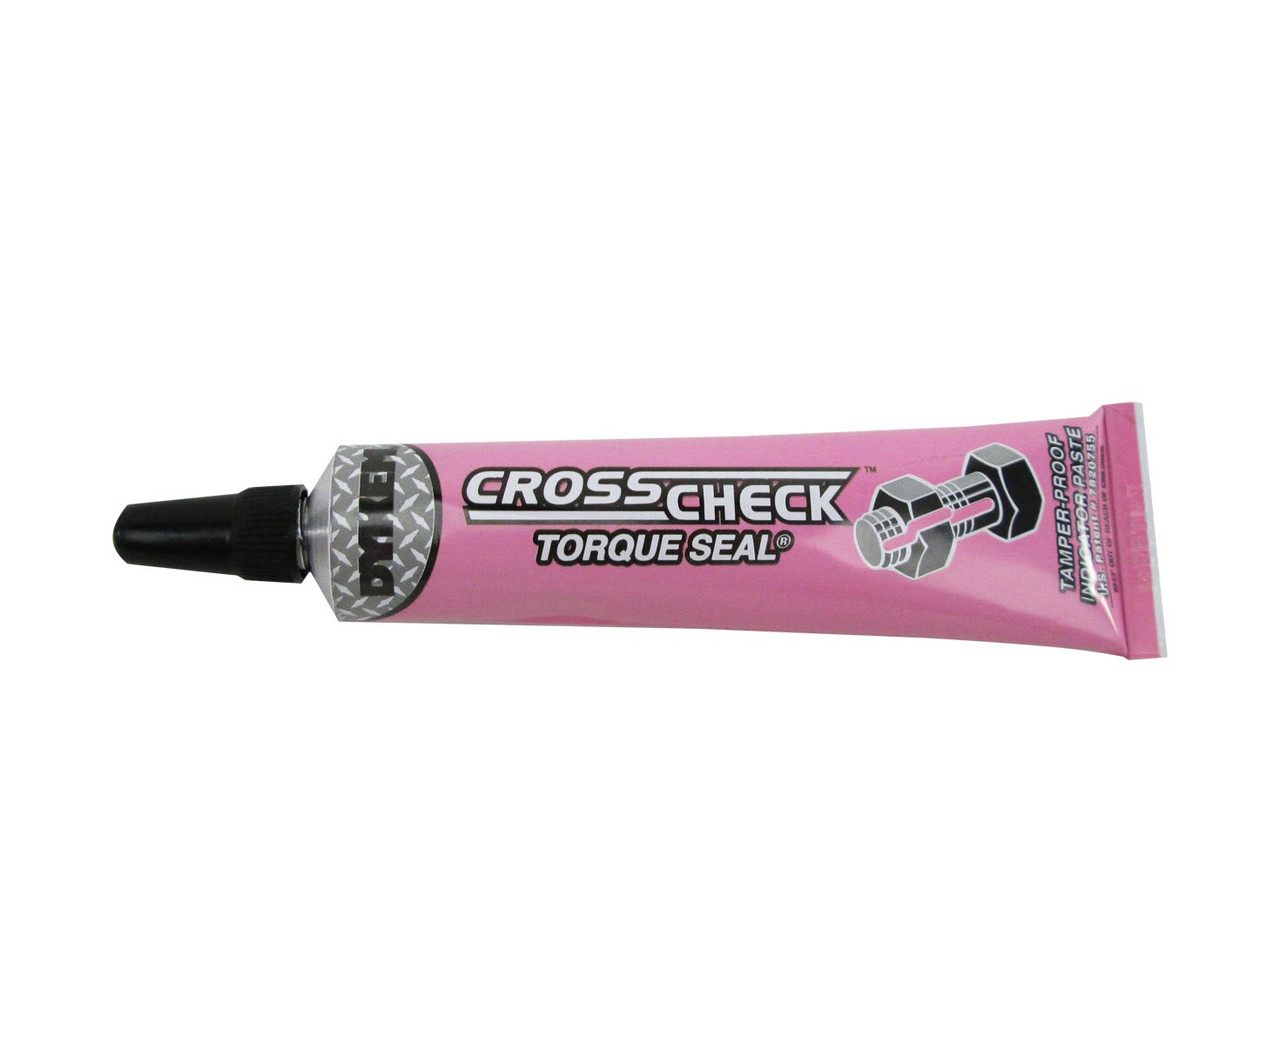 DYKEM - 83420 - Indicator Paste, Tamper-Evident Marker, Pink